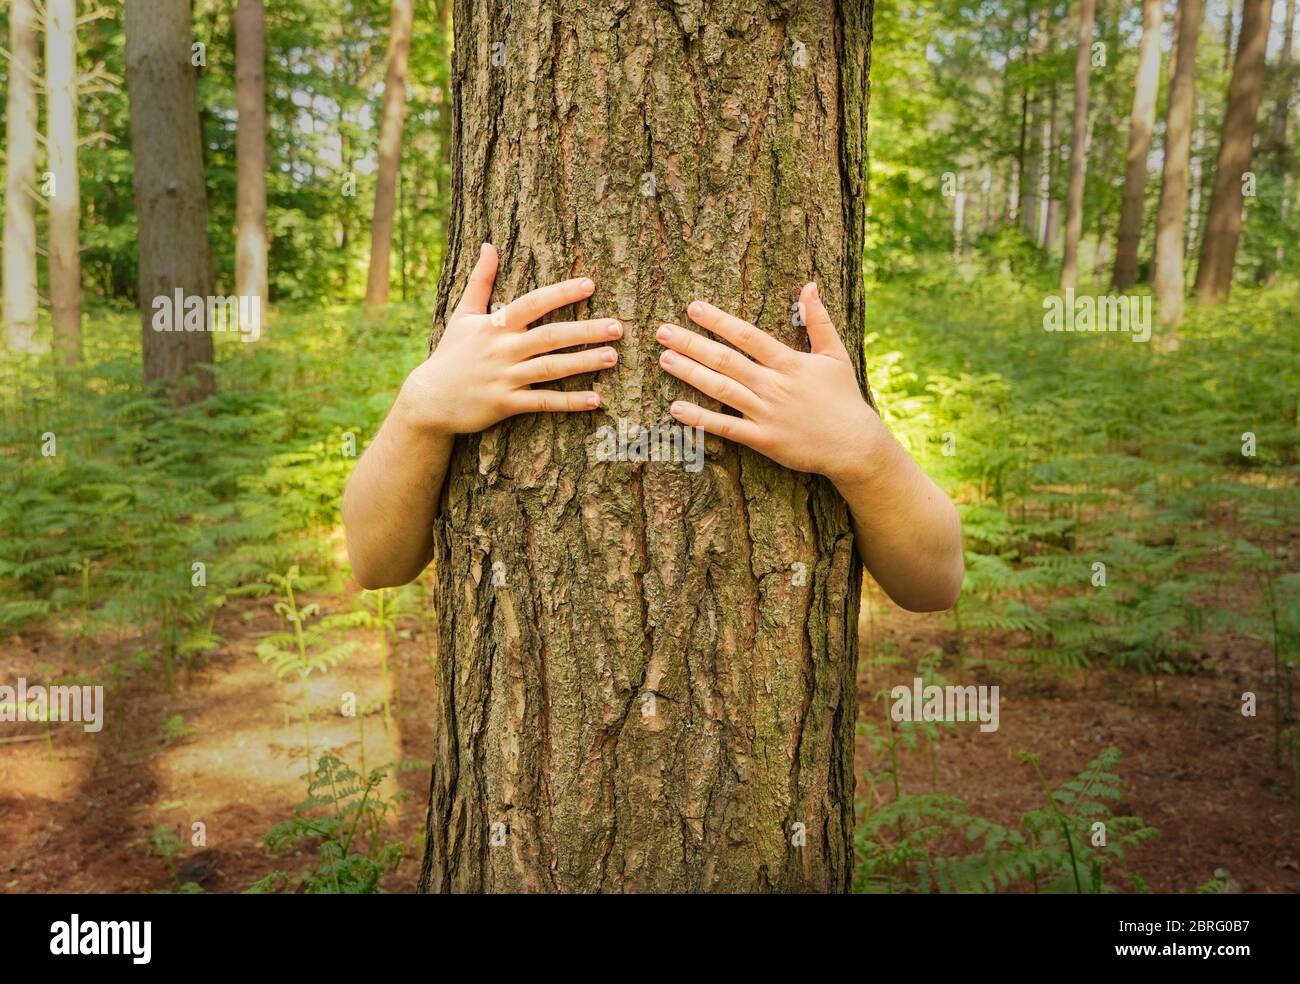 Immagine ambientale di deforestazione di un protestore che abbruttava un tronco di albero per proteggerlo da essere abbattuto con spazio di copia. Foto Stock